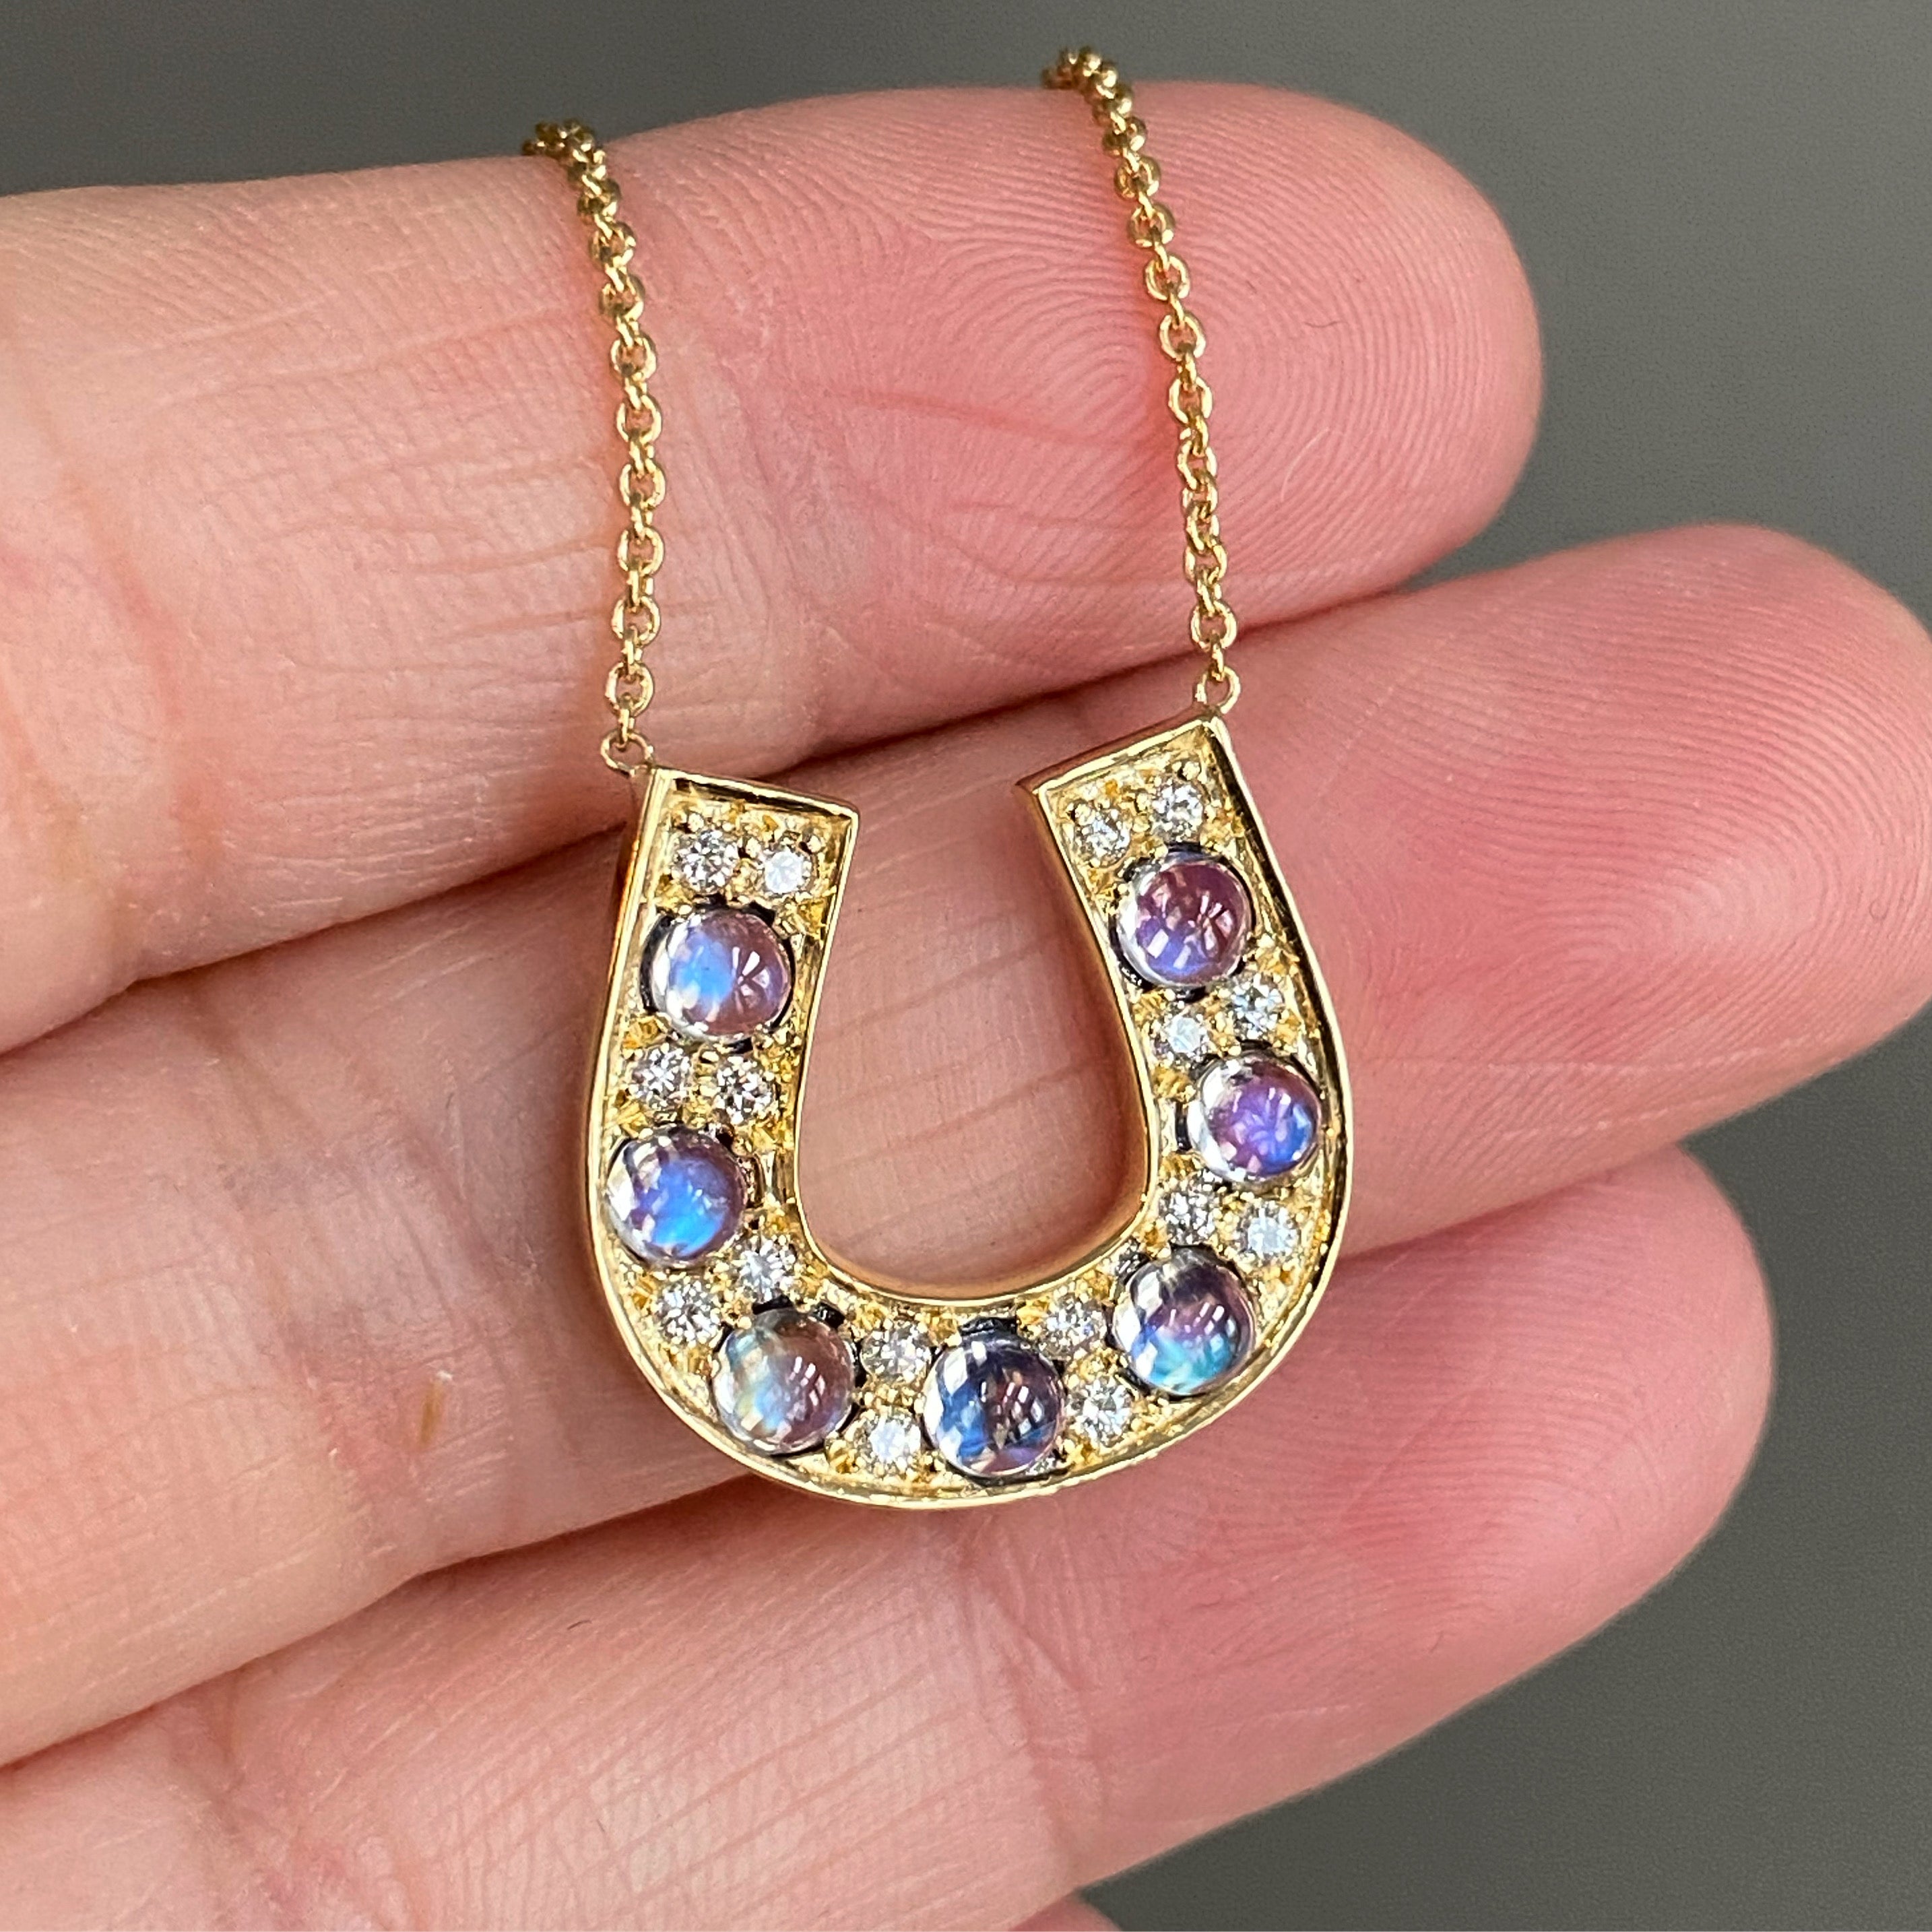 14K Gold Diamond Emerald HorseShoe Pendant Necklace – Boylerpf